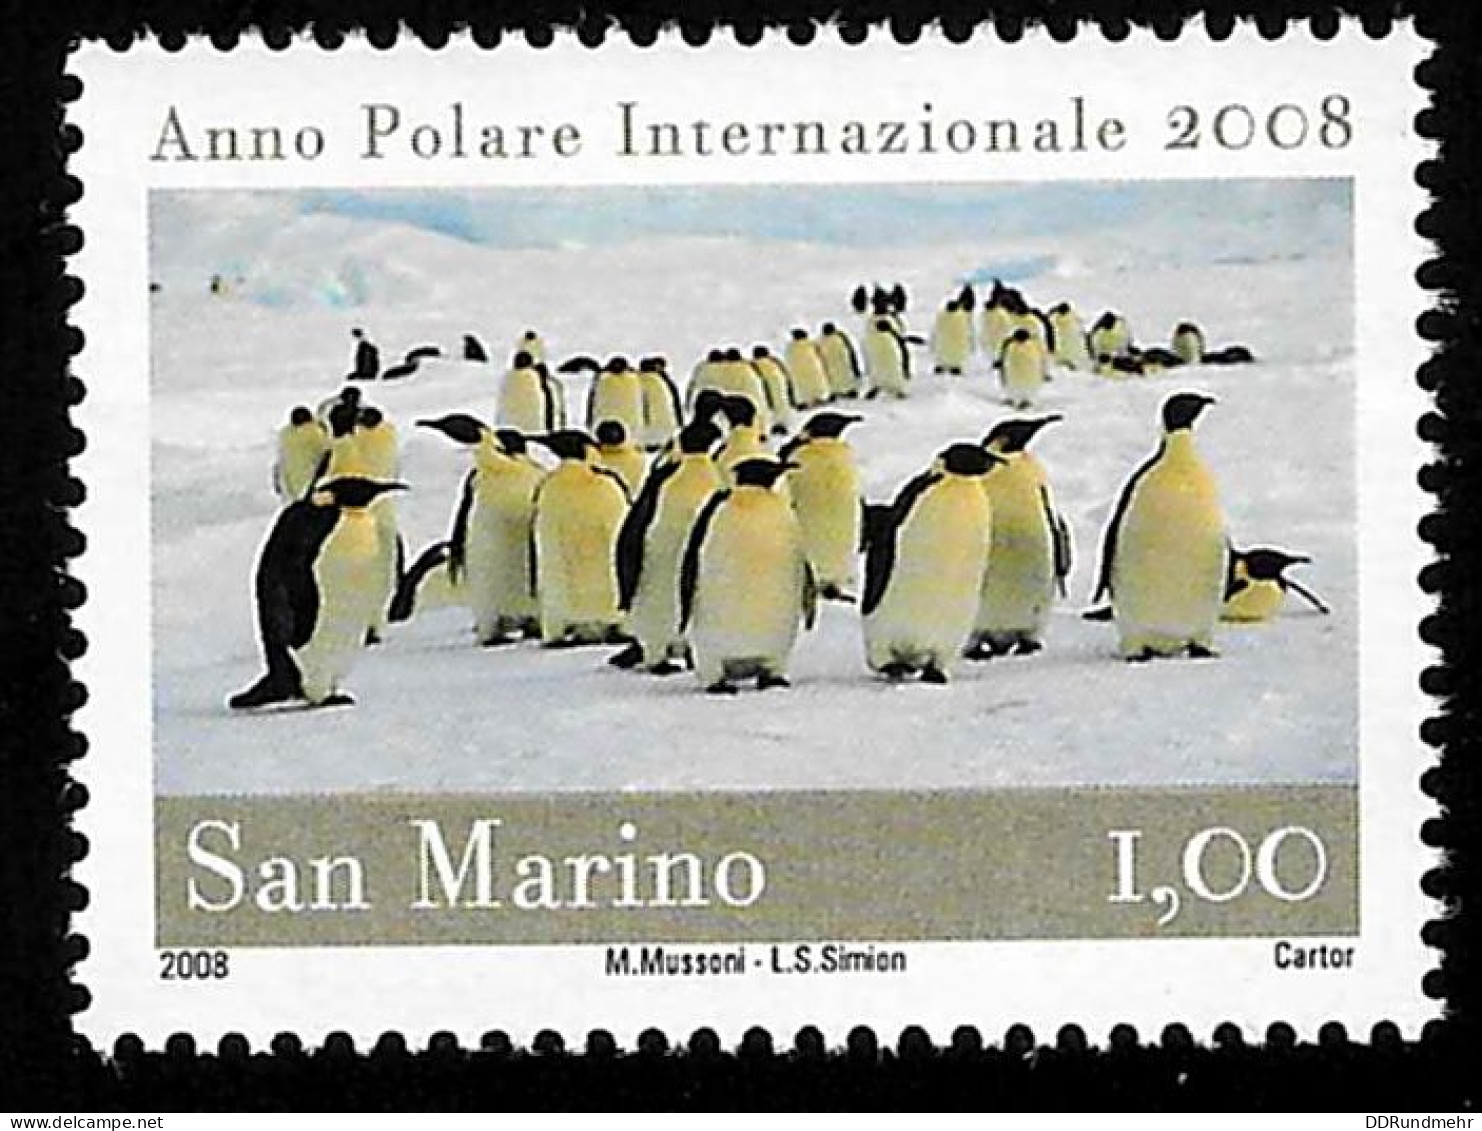 2008 Polar Year Michel SM 2359 Stamp Number SM 1769 Yvert Et Tellier SM 2152 Stanley Gibbons SM 2185 Xx MNH - Ungebraucht